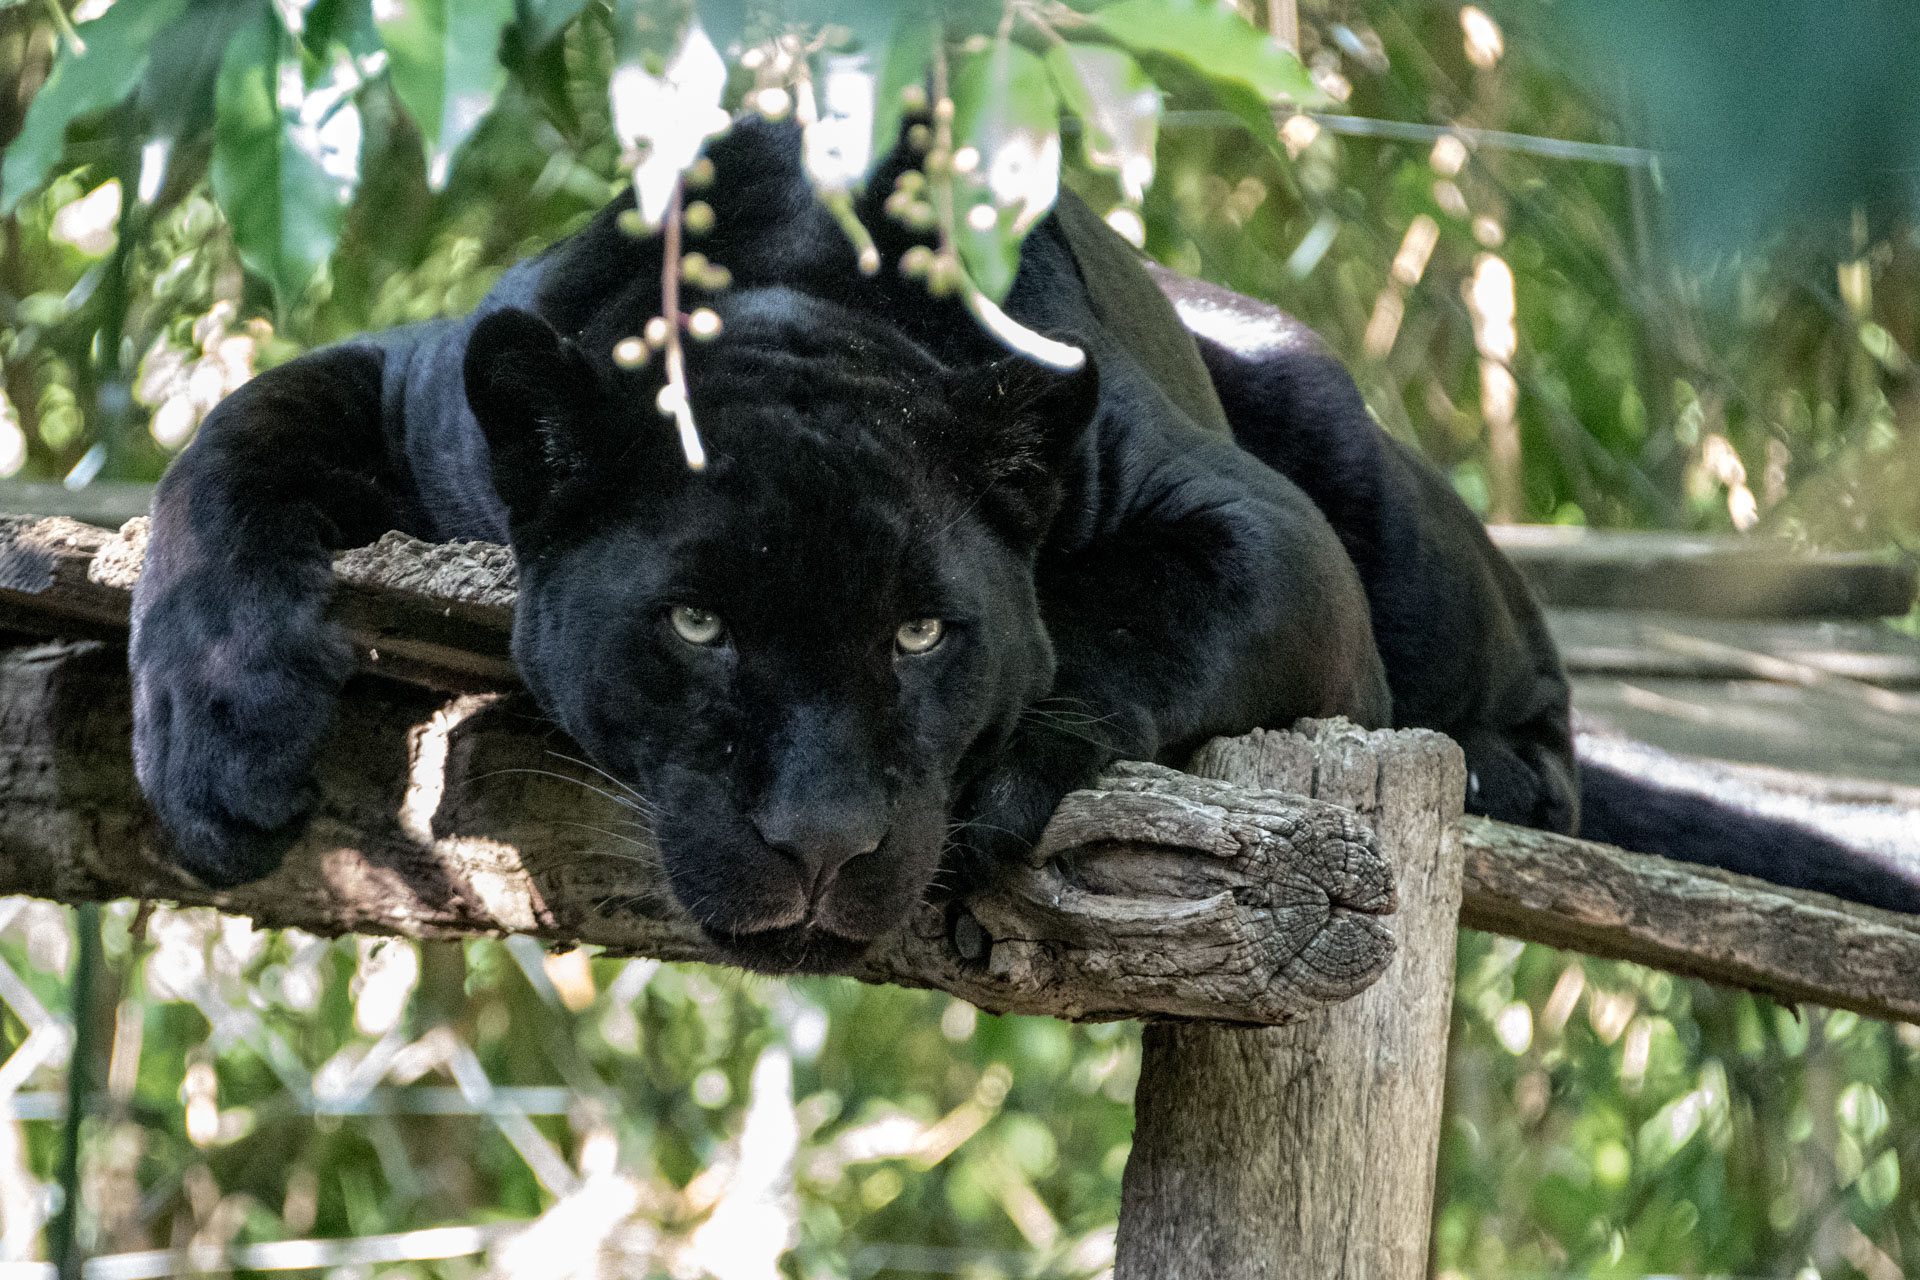 La panthère noire est un mammifère carnassier (qui se nourrit de viande crue) d'Afrique et d'Asie. Il s'agit en fait d'un léopard au pelage sombre (mélanisme).